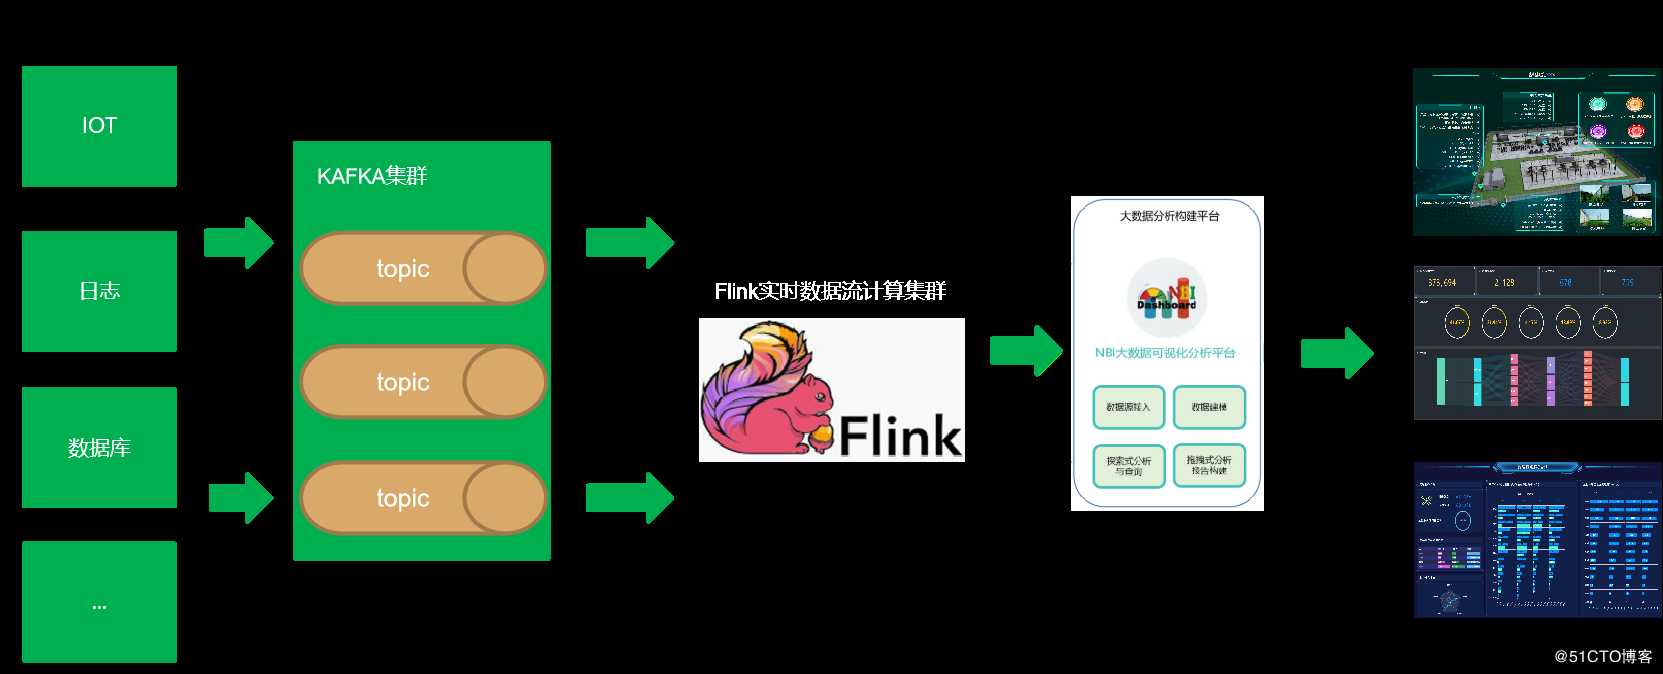 通过Flink+NBI可视化构建实时大数据分析系统